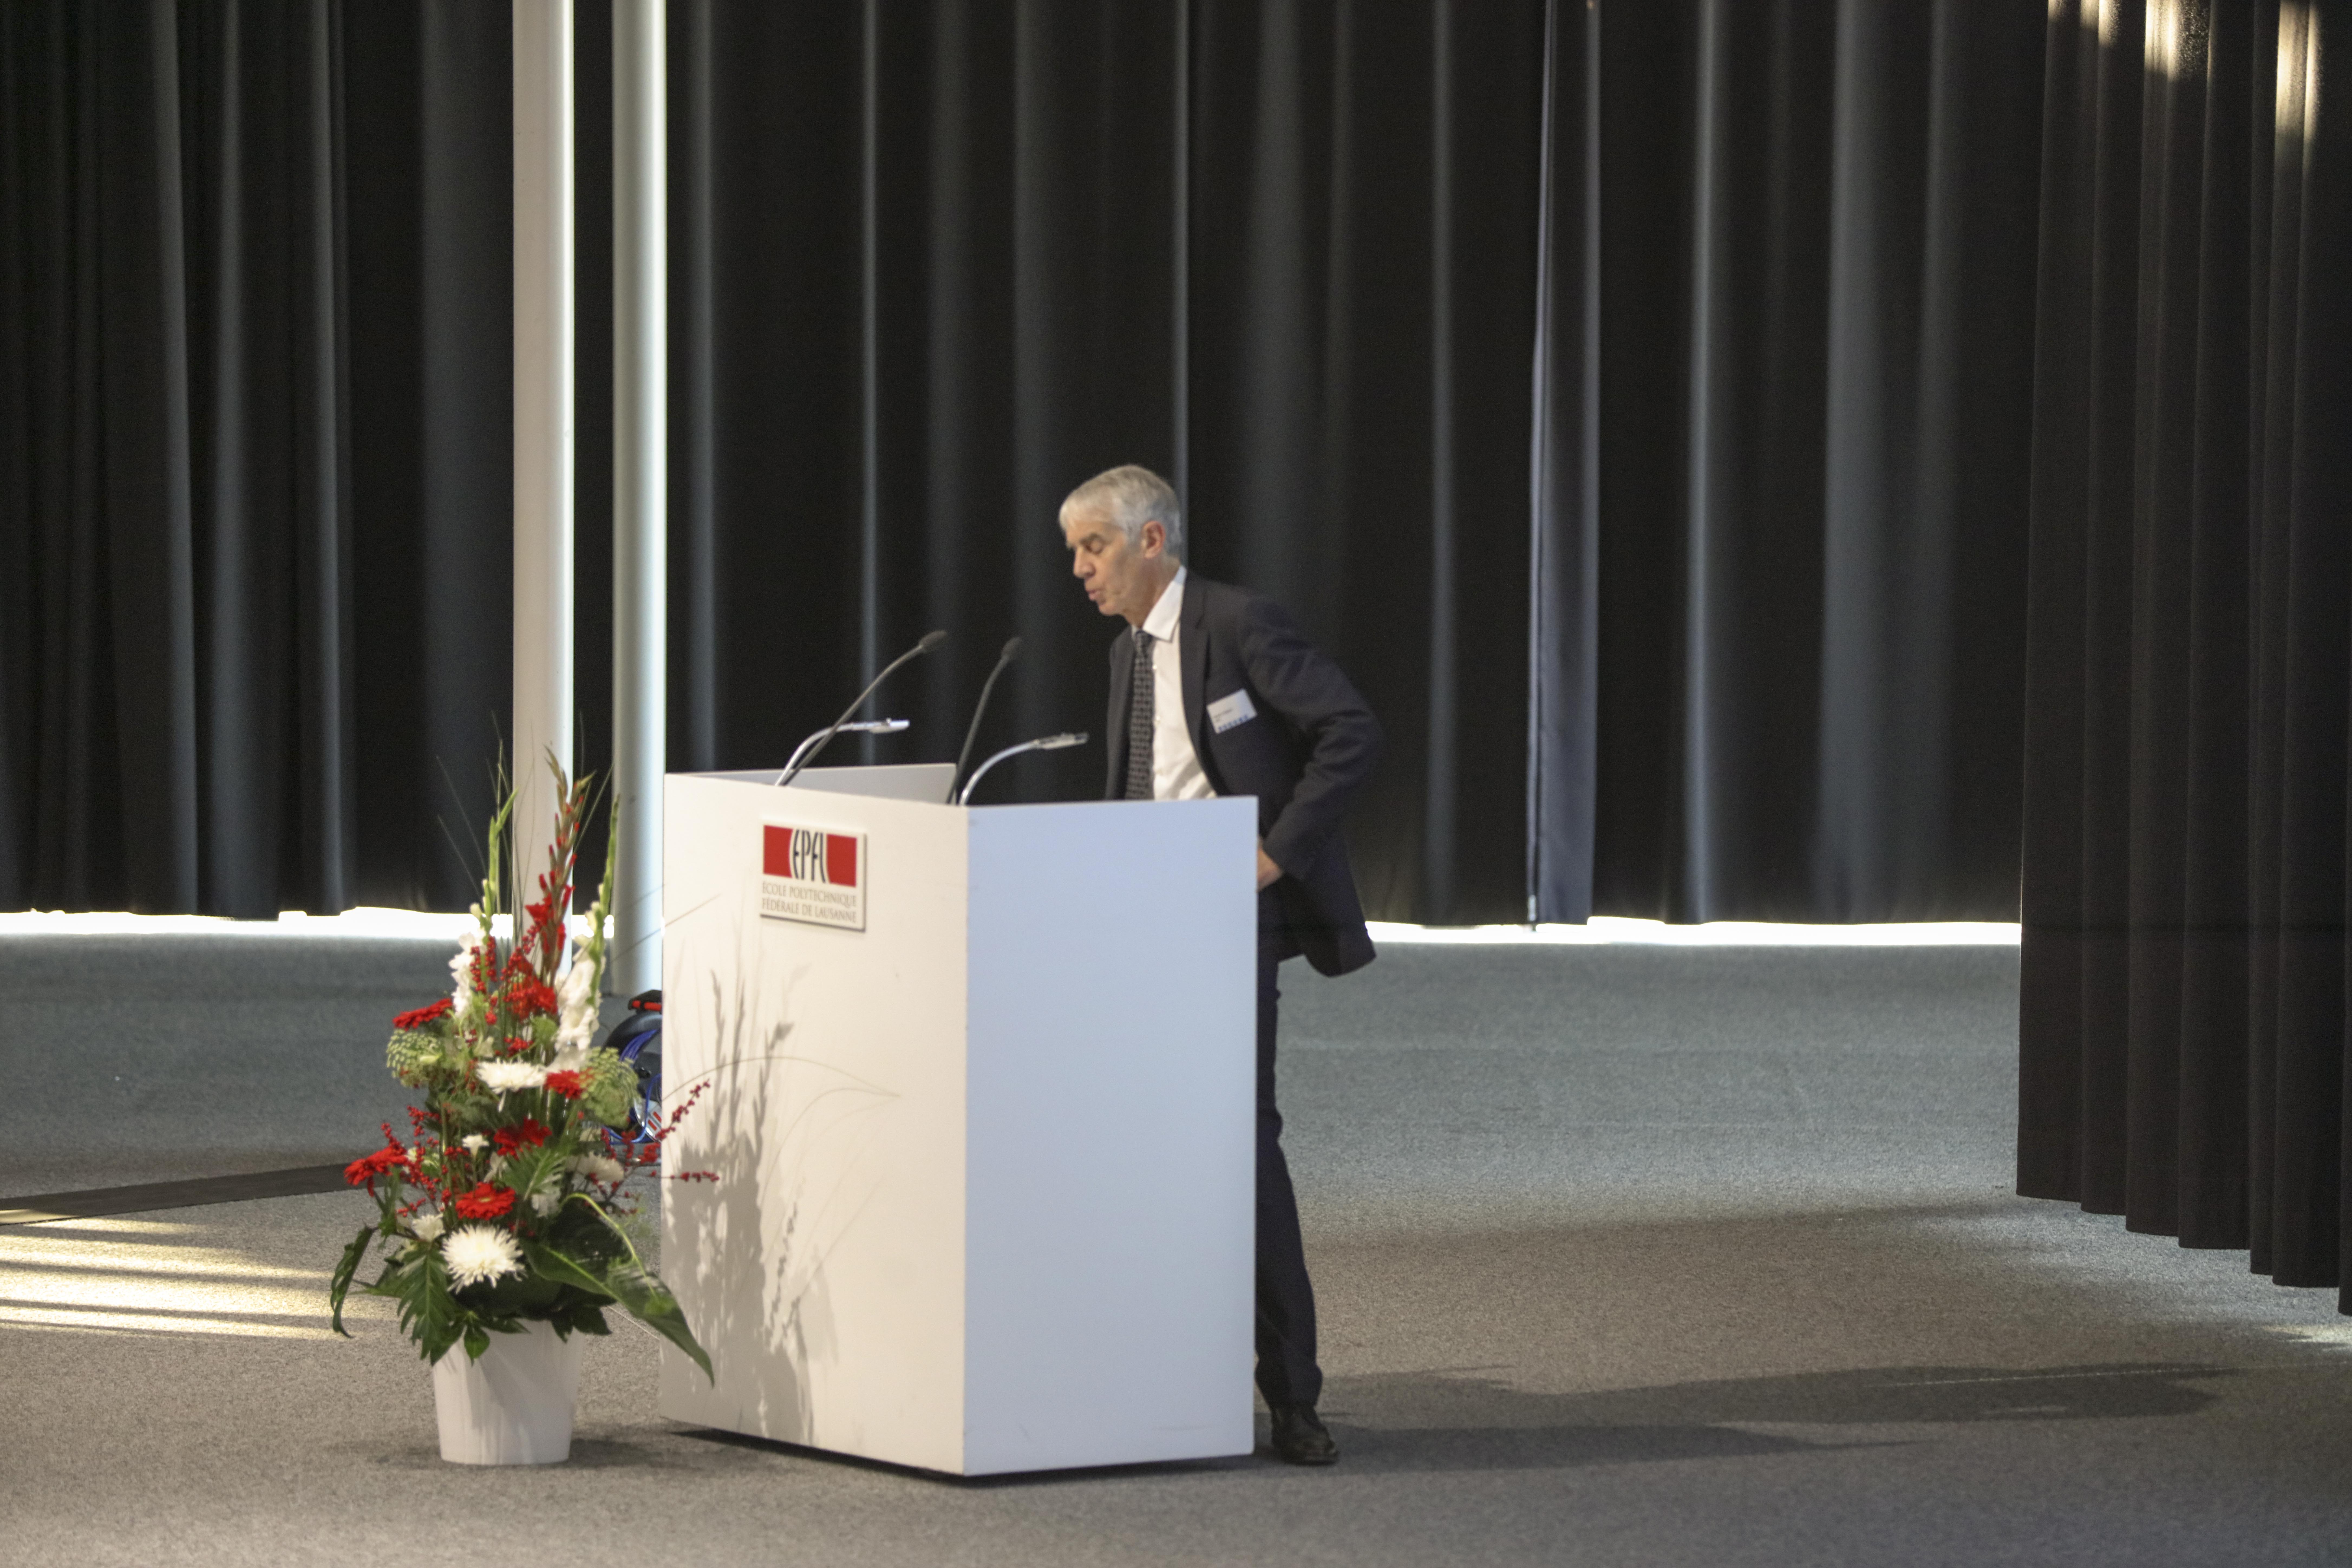 Begrüssung durch Prof. Dr. Martin Vetterli, Präsident der EPFL